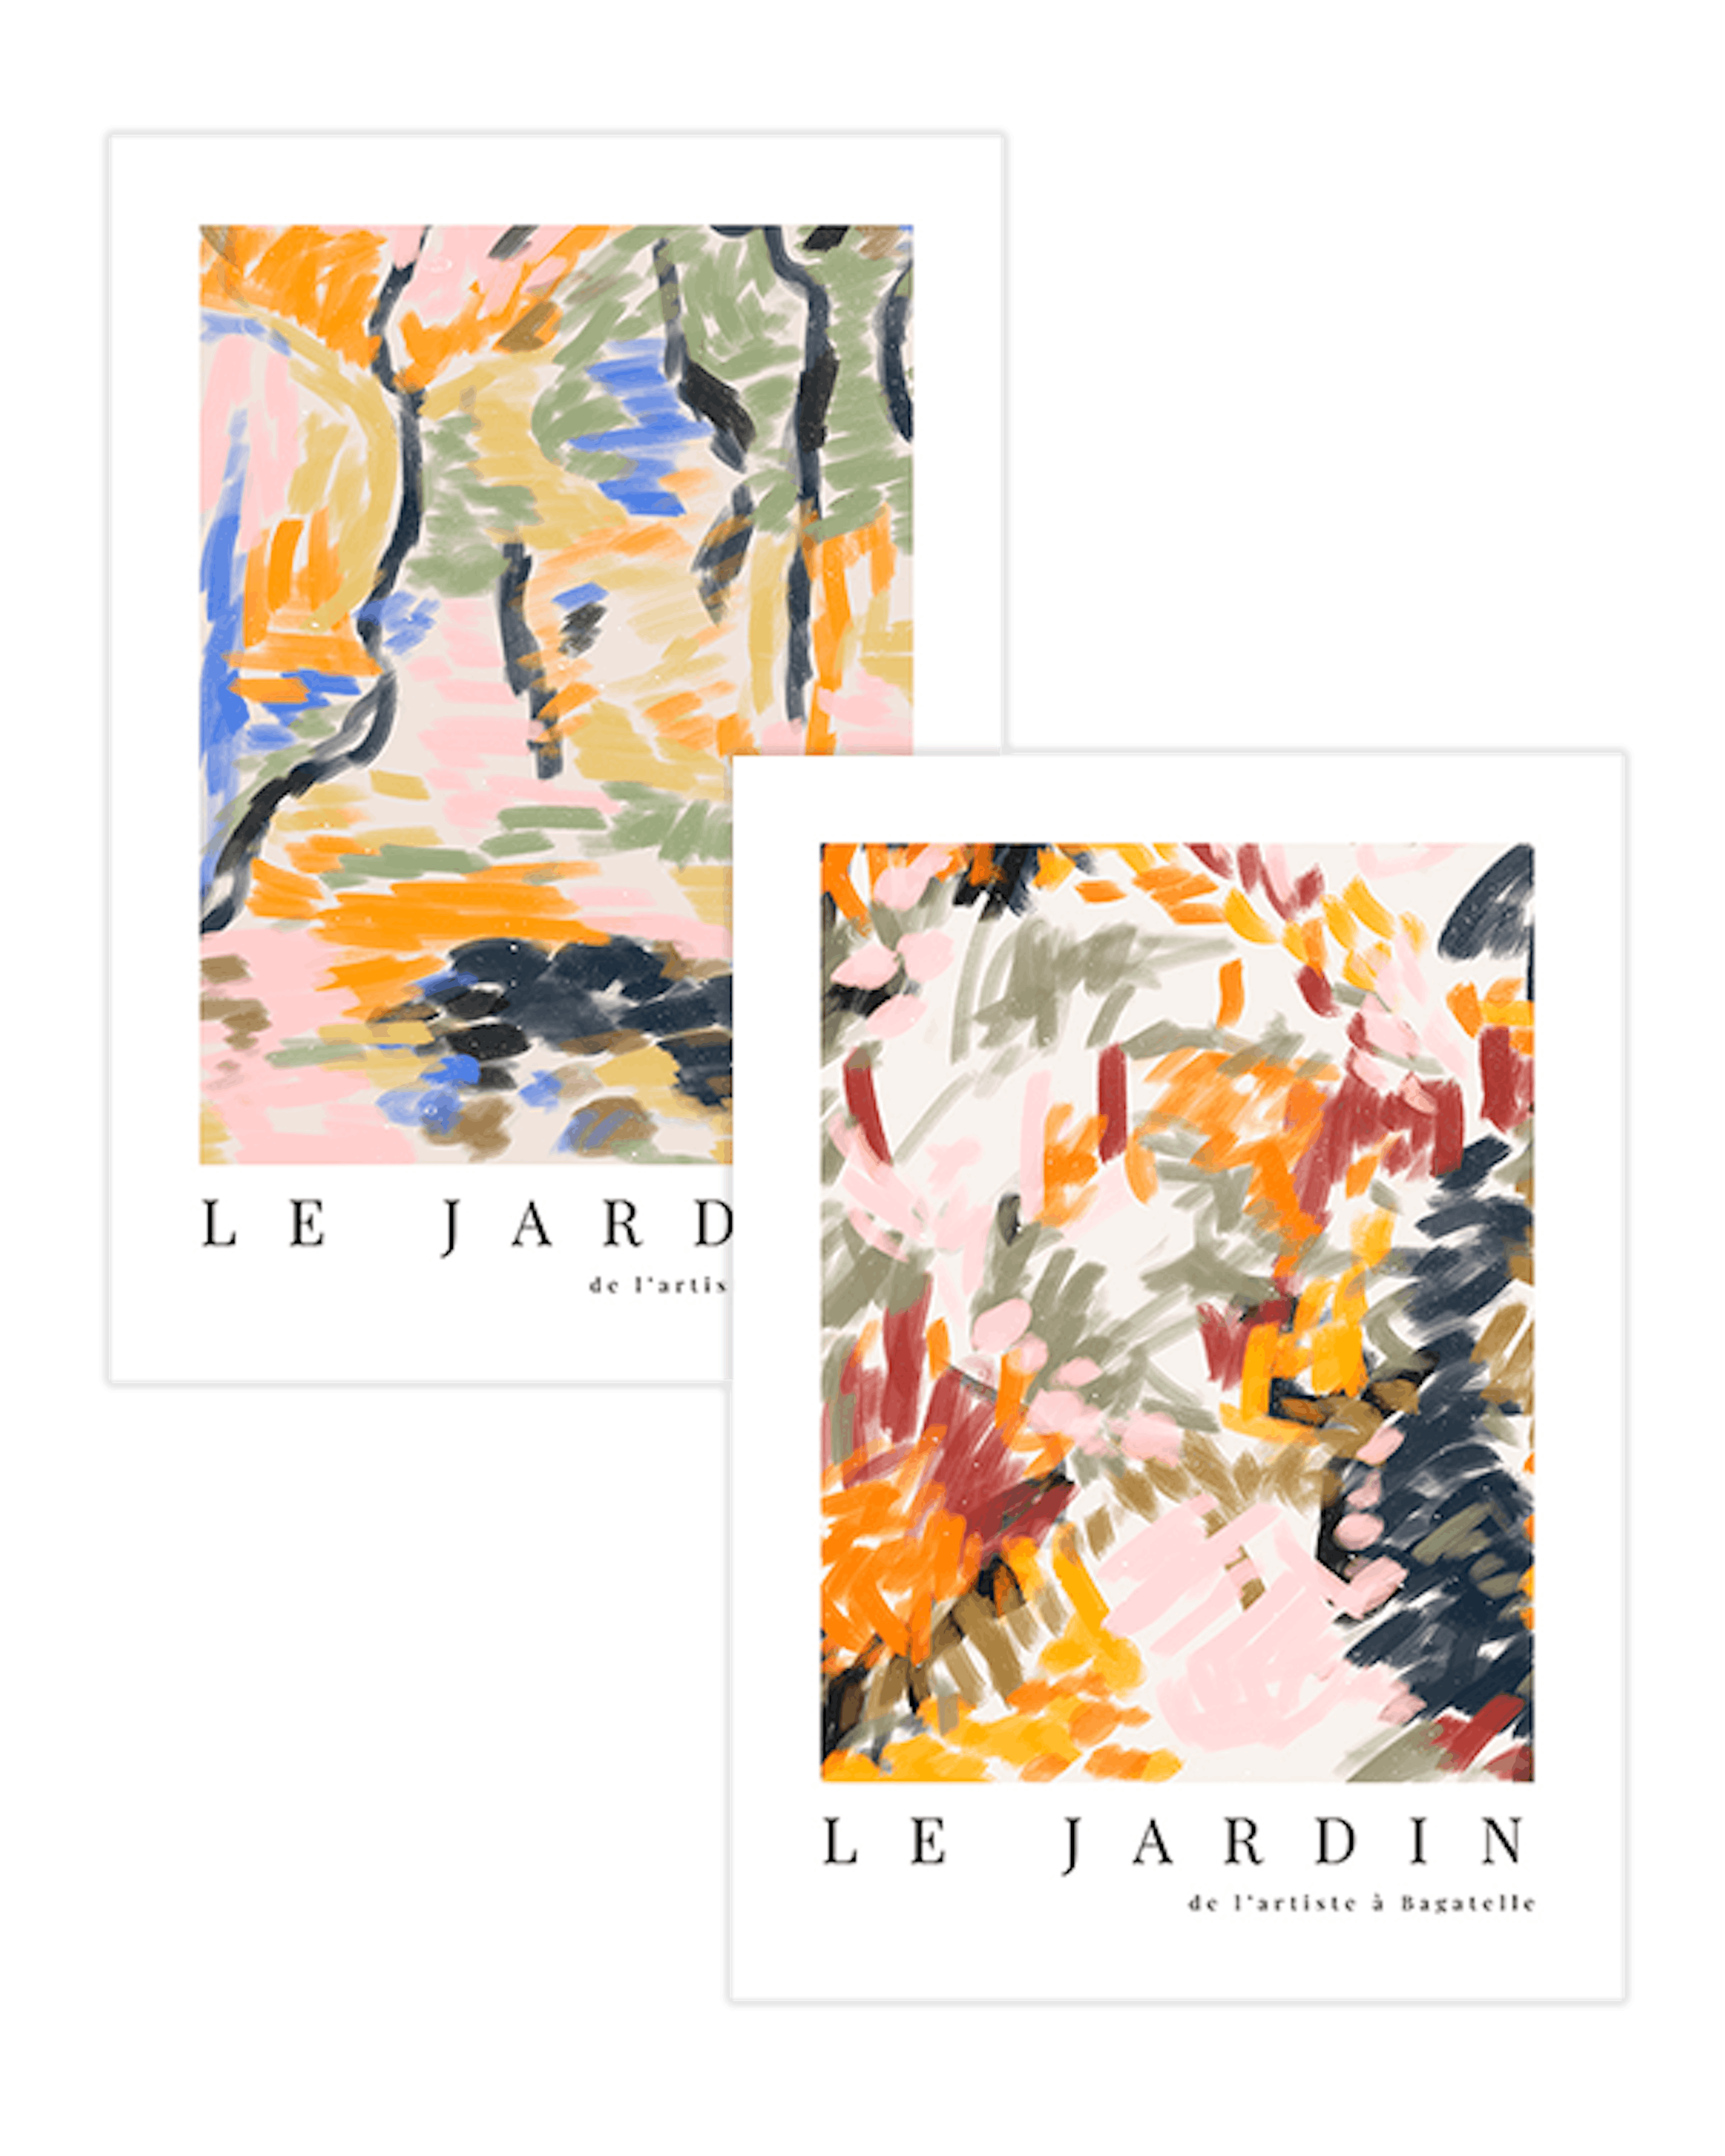 Le Jardin Duo Lot de posters